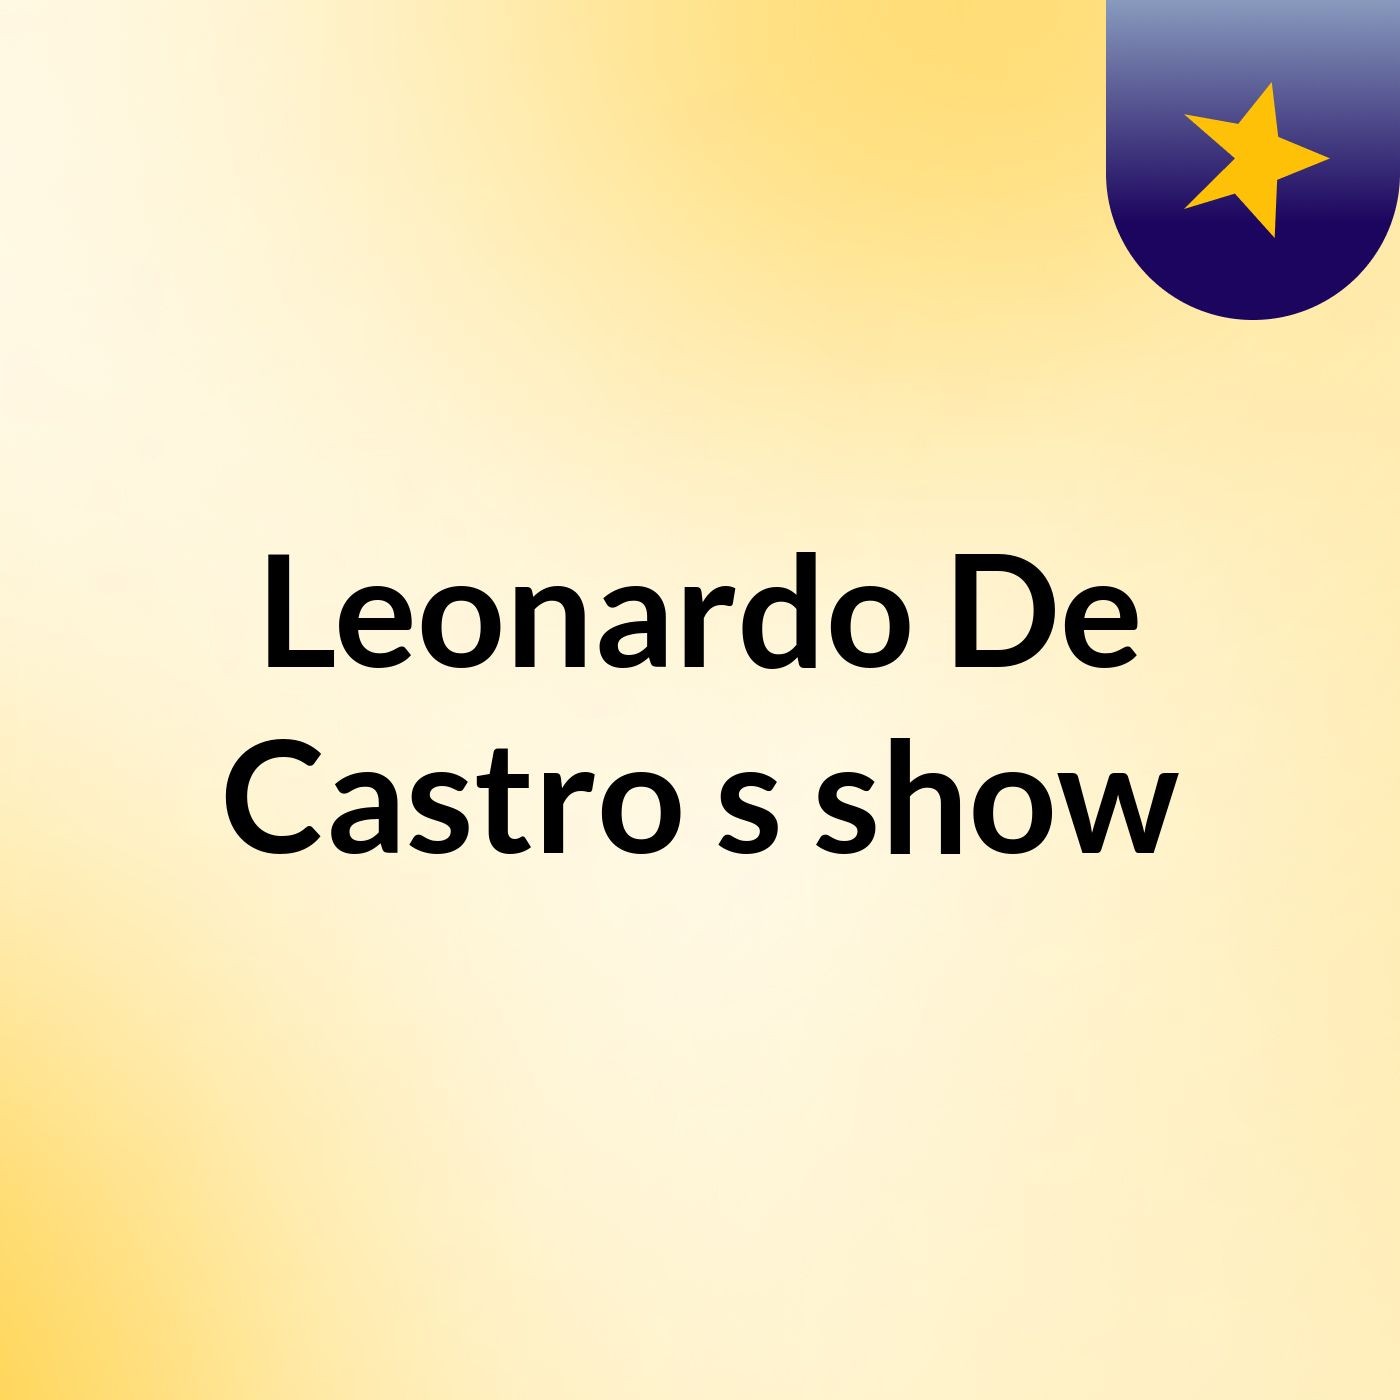 Leonardo De Castro's show